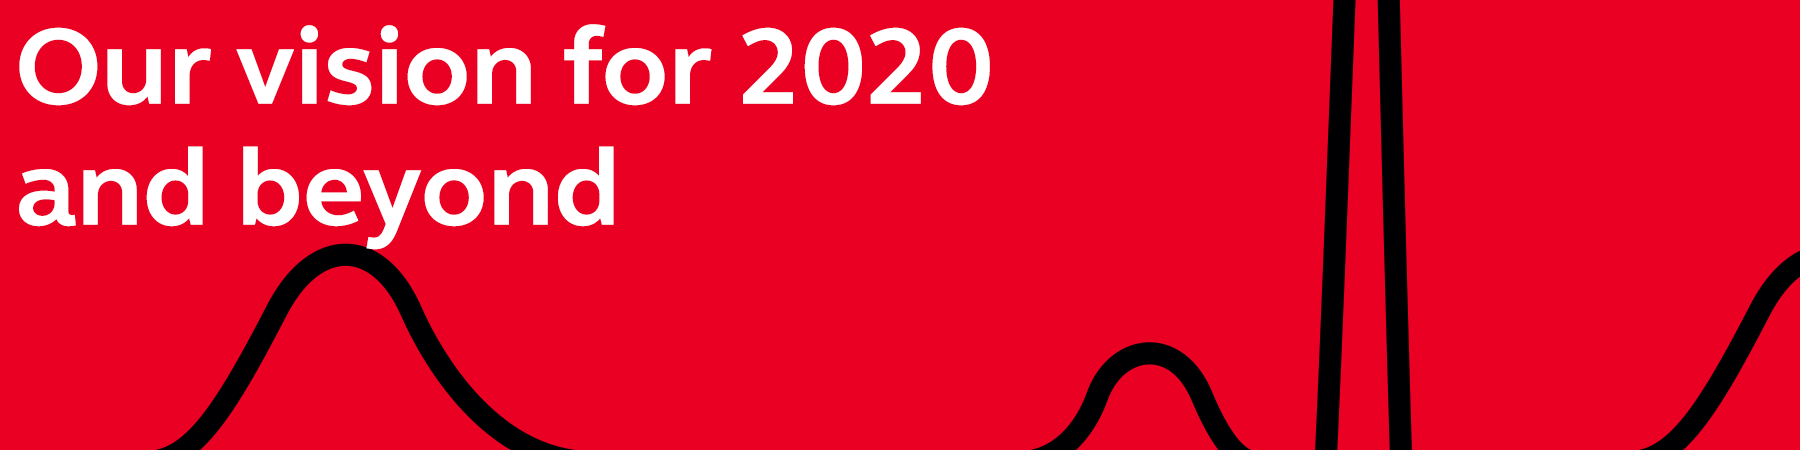 beyond 2020 vision